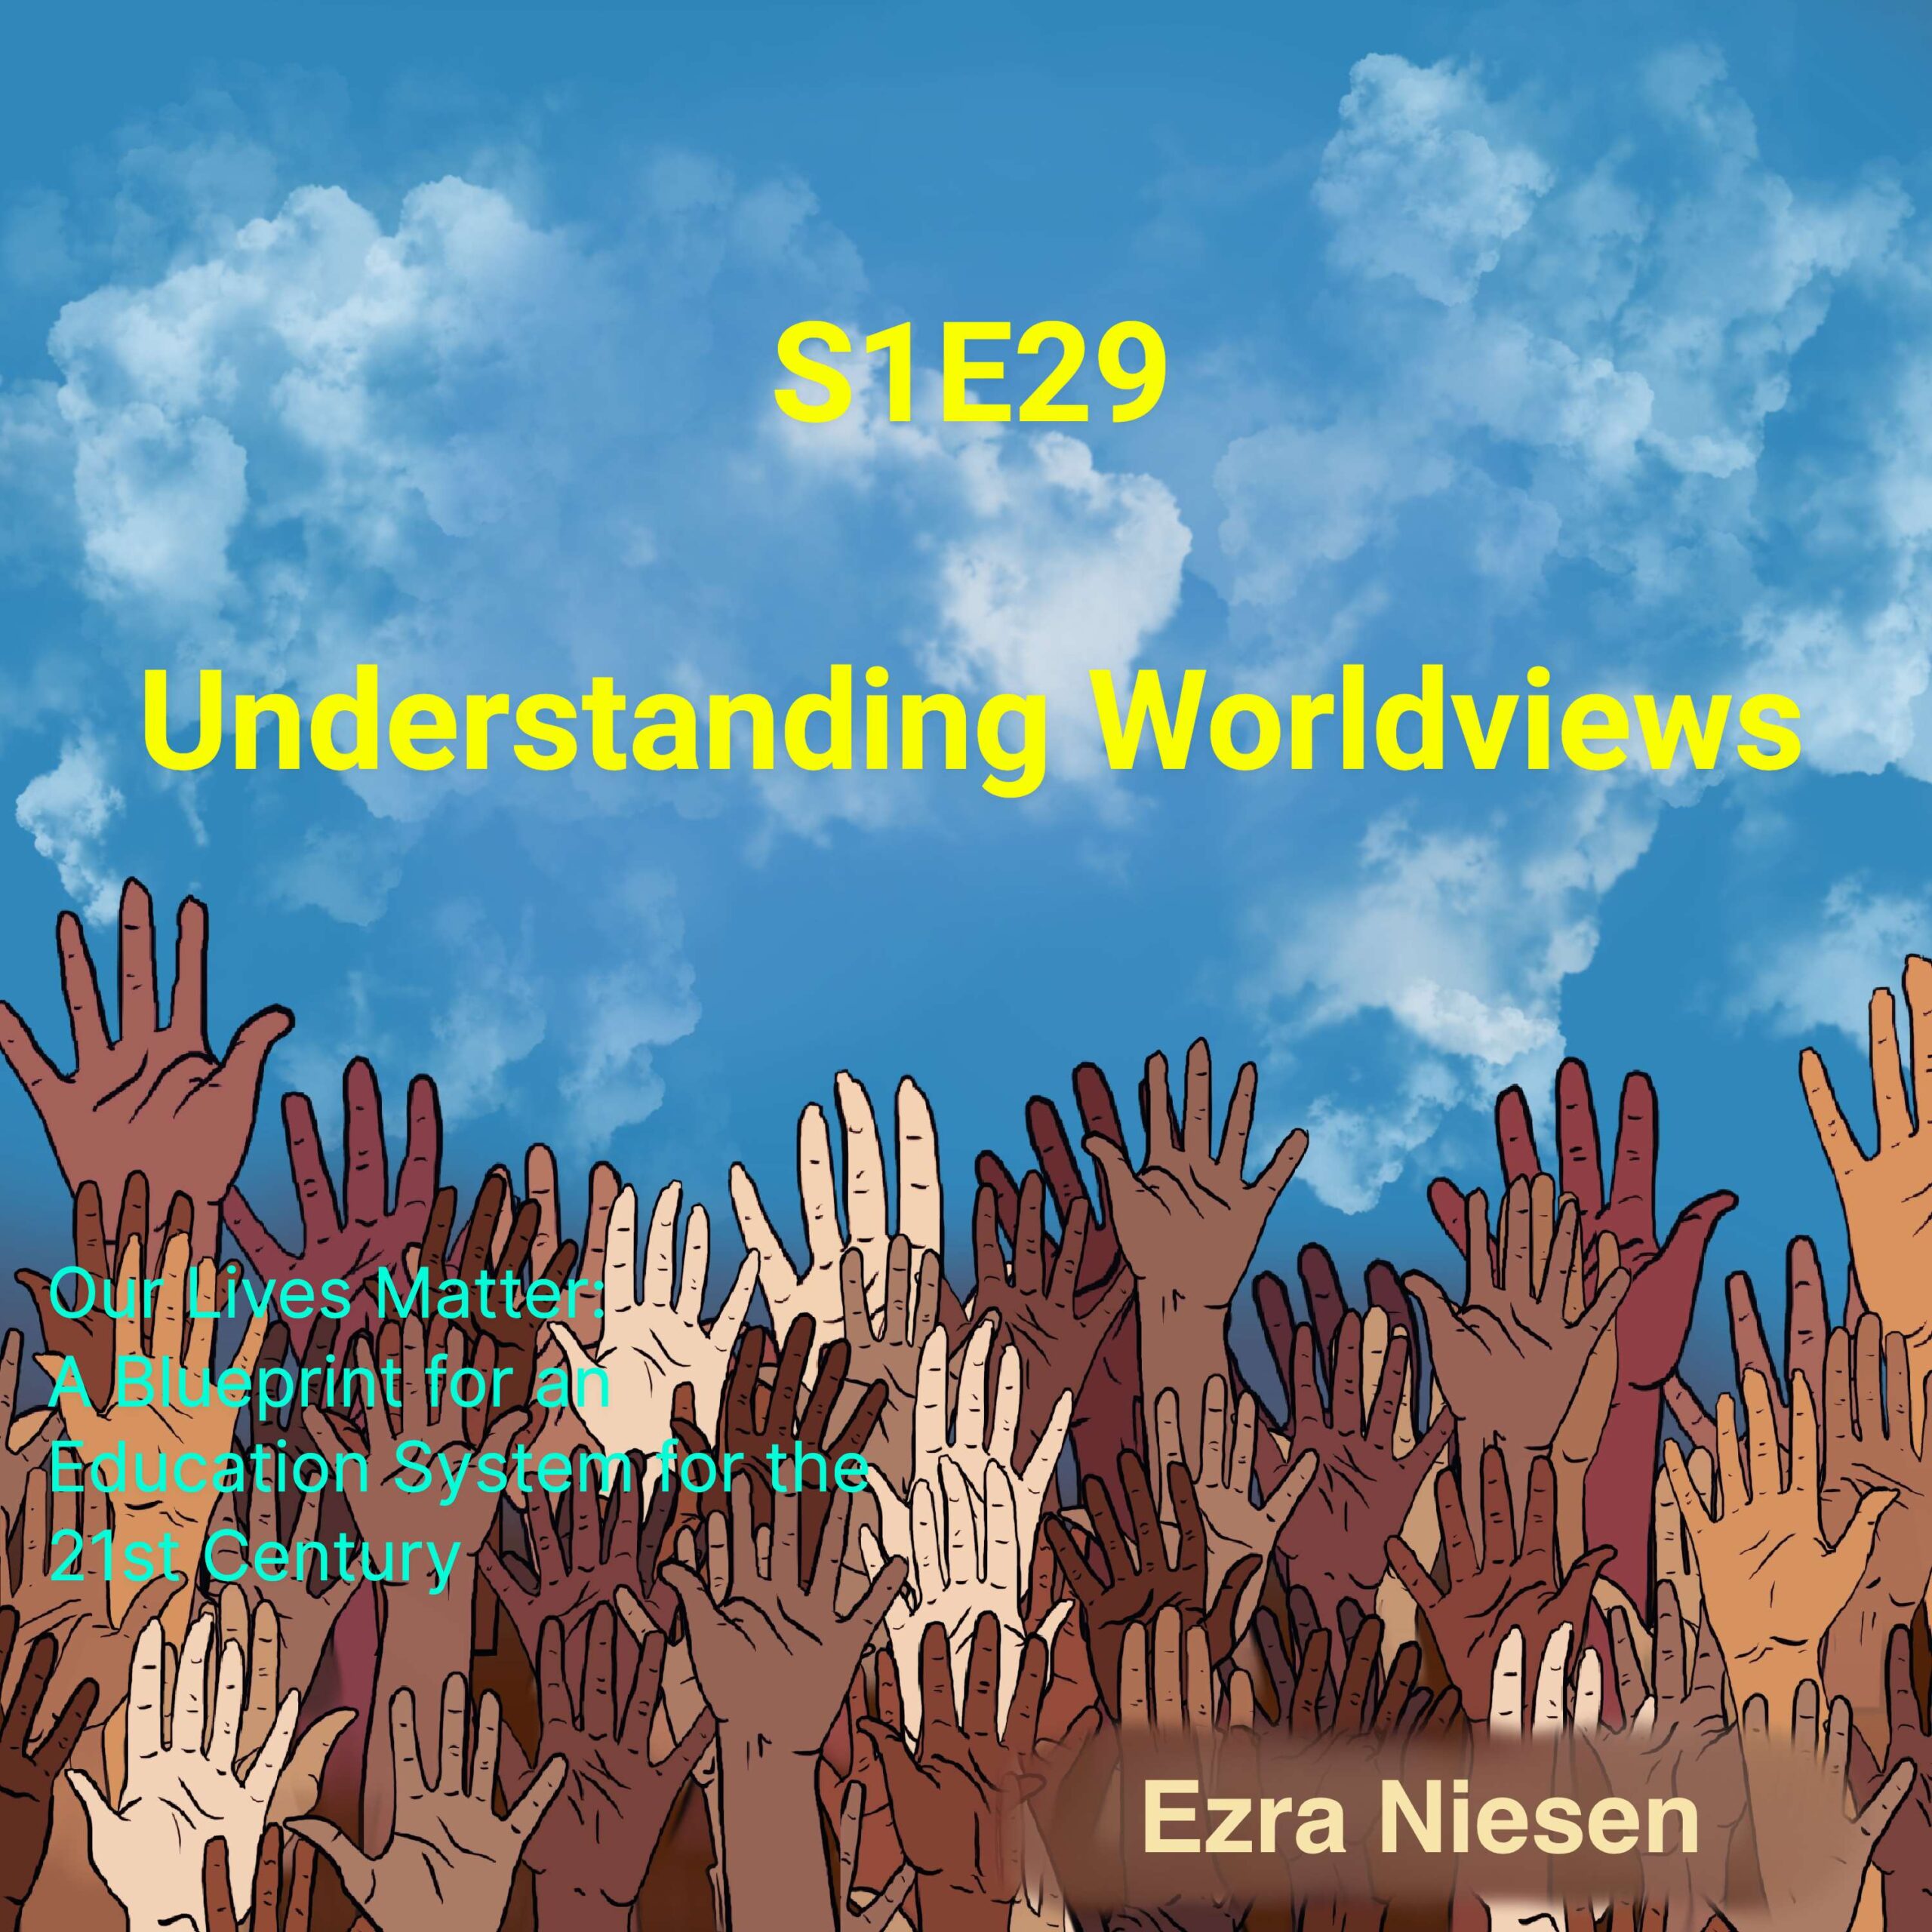 Our Lives Matter S1E29: Understanding Worldviews